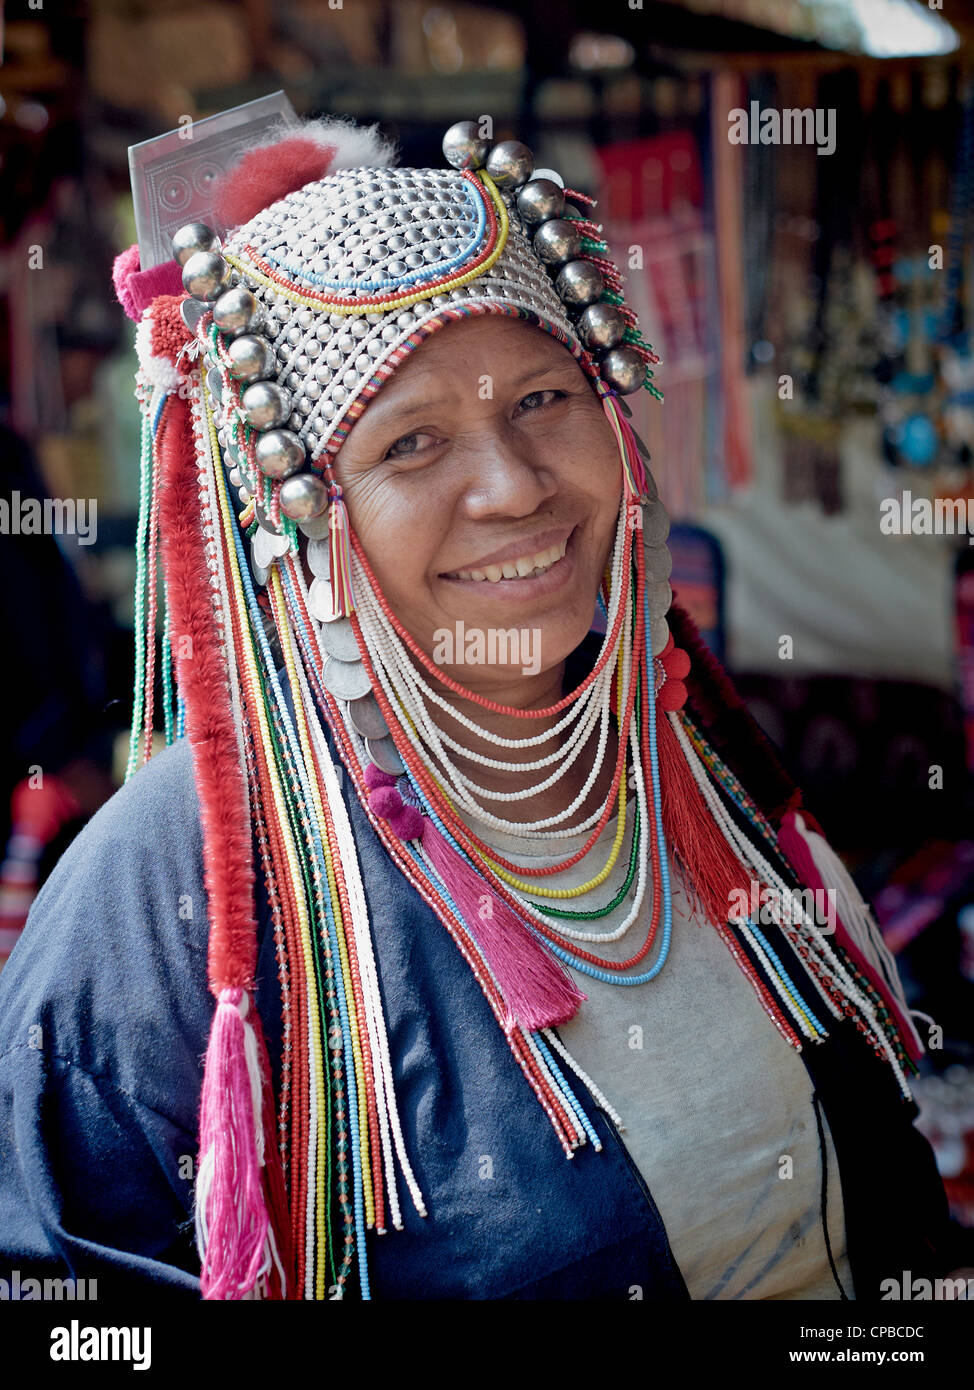 Akha Hill Tribe Frau von Nord-thailand. Chiang Mai Provinz. Ländliche Thailand Menschen S.E. Asien. Bergstämme Stockfoto